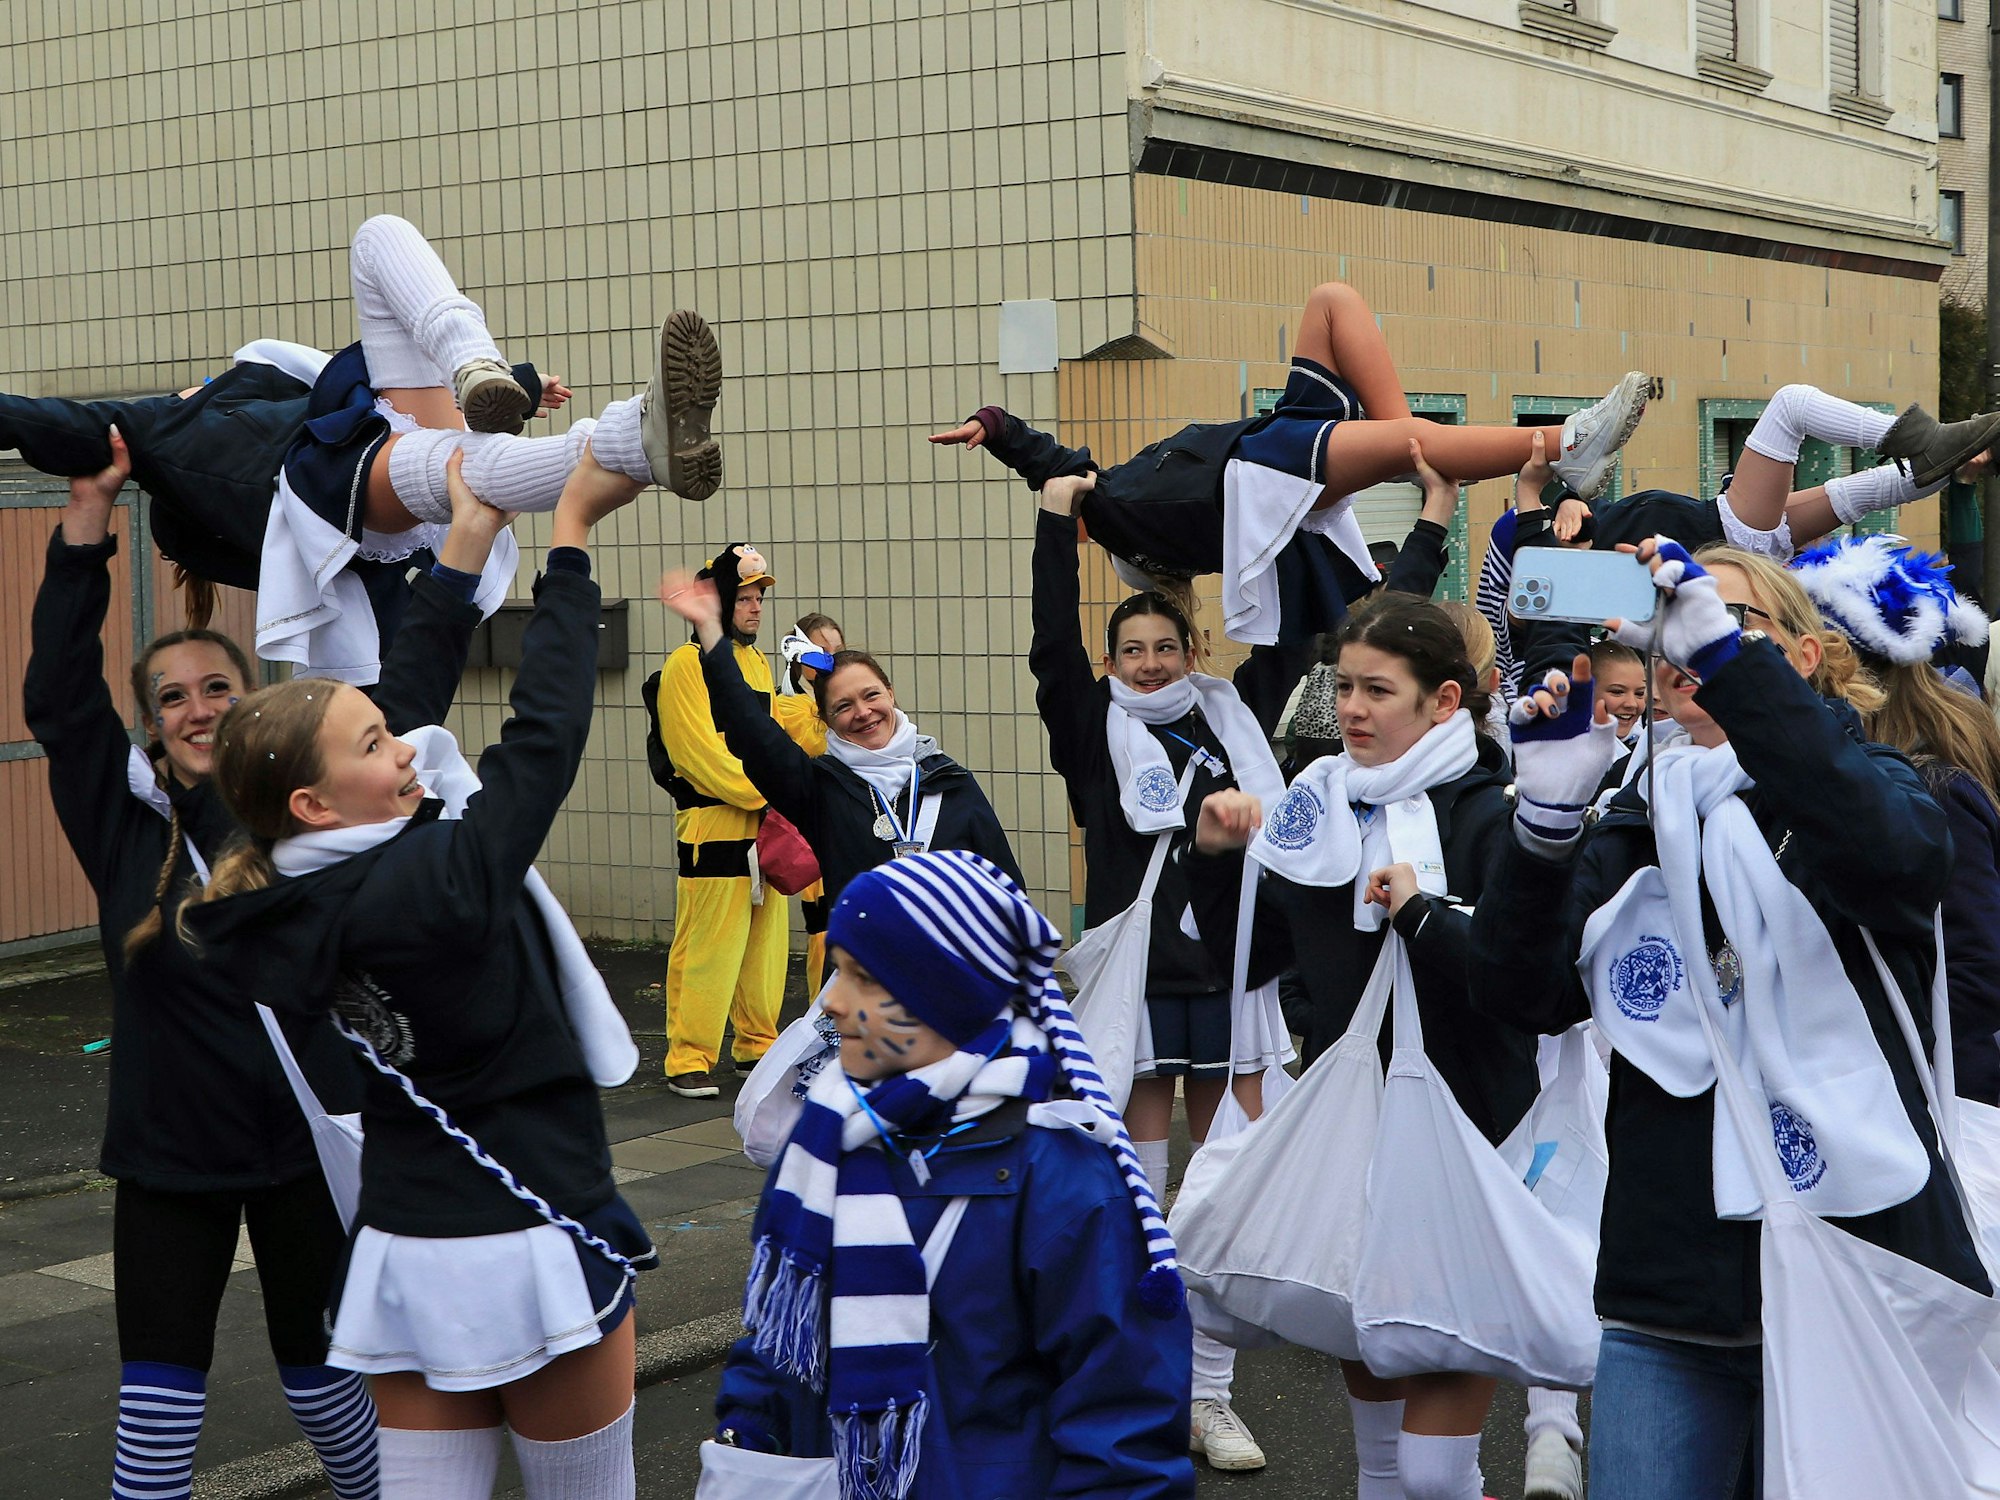 Karneval in Blau und Weiß: Das Tanzcorps der Weißpfennige zeigte auch während des Zuges in Königsdorfes sein Können.